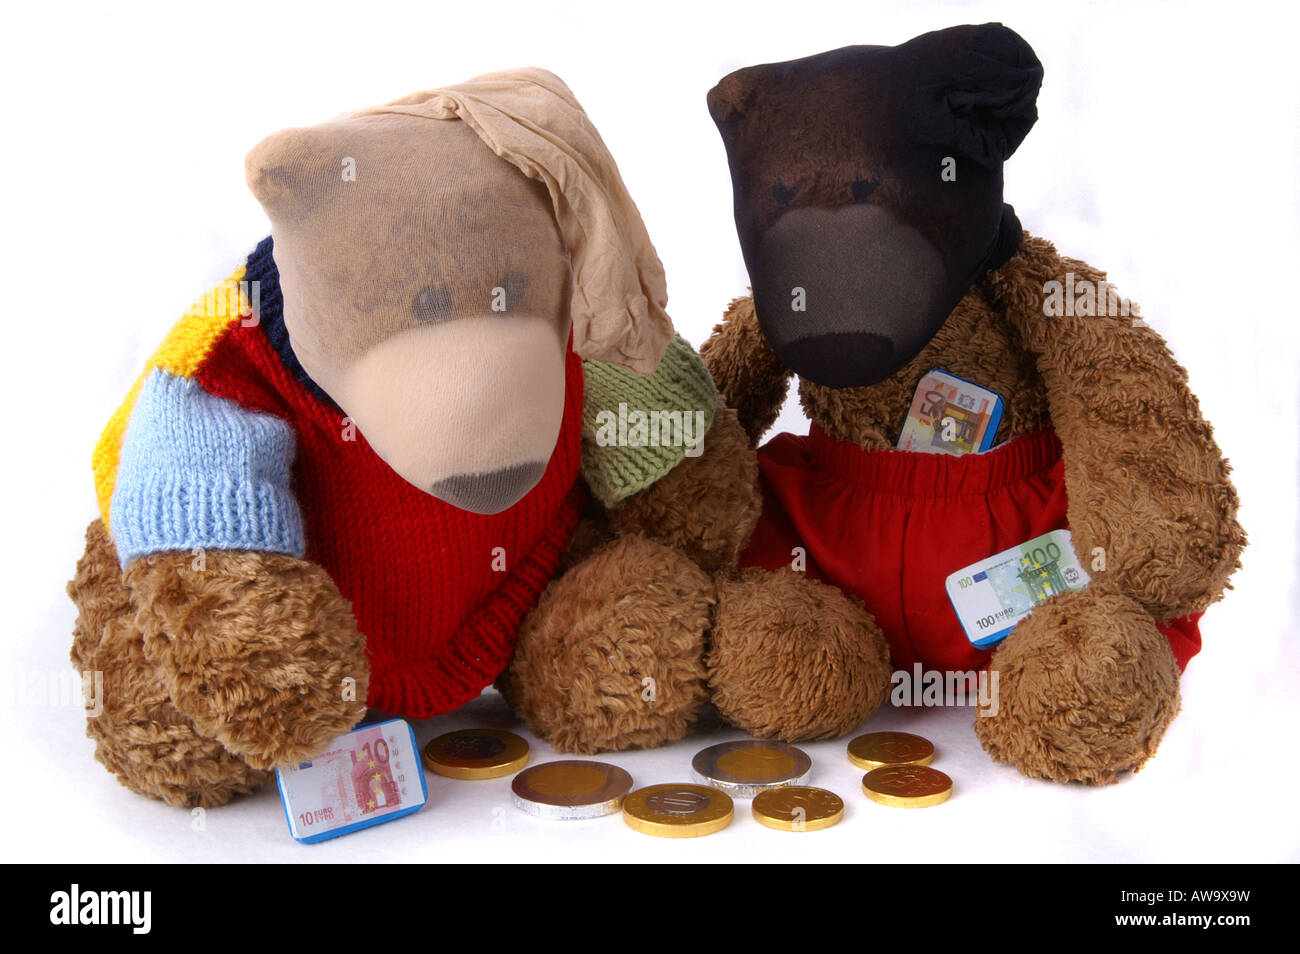 Beary bank robbers wearing stocking masks / Zwei Teddybären mit Strumpfmasken zählen Schokoladengeld Stock Photo